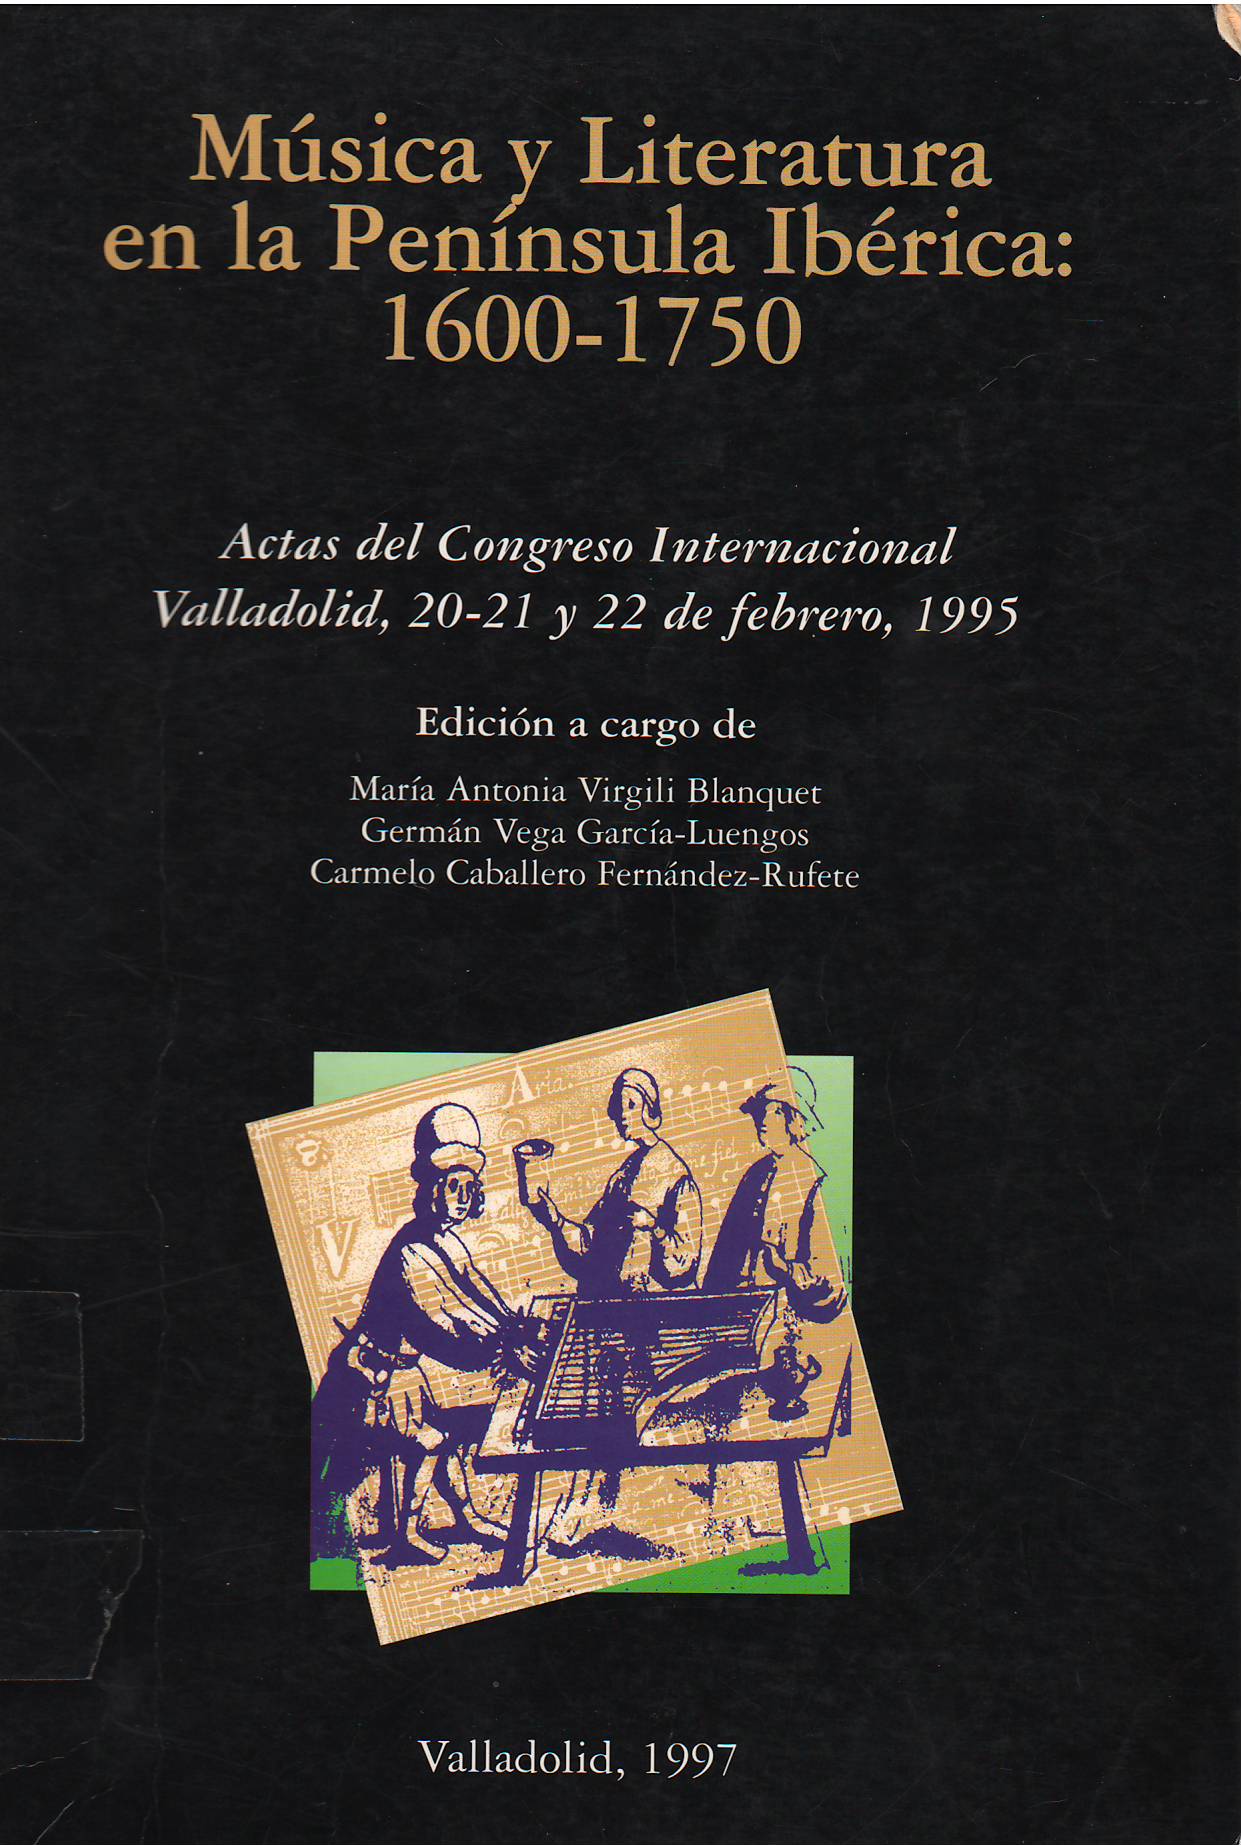 Imagen de portada del libro Música y literatura en la península ibérica: 1600-1750